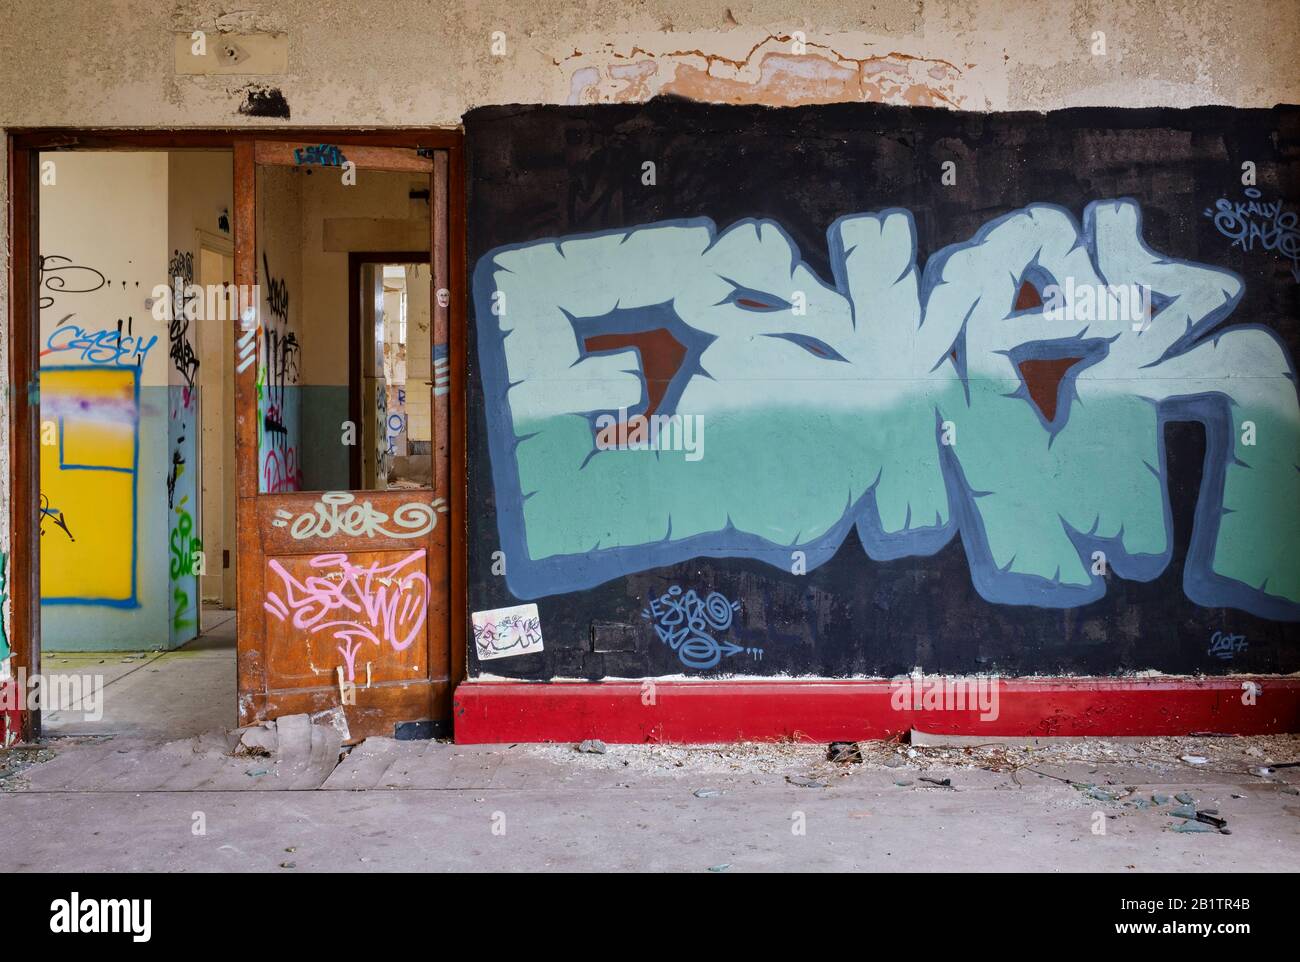 Bâtiments négligés, isolés, d'art urbain, avec des murs de graffitis peints en spray, usine de dérapage, peinture peeling. Banque D'Images